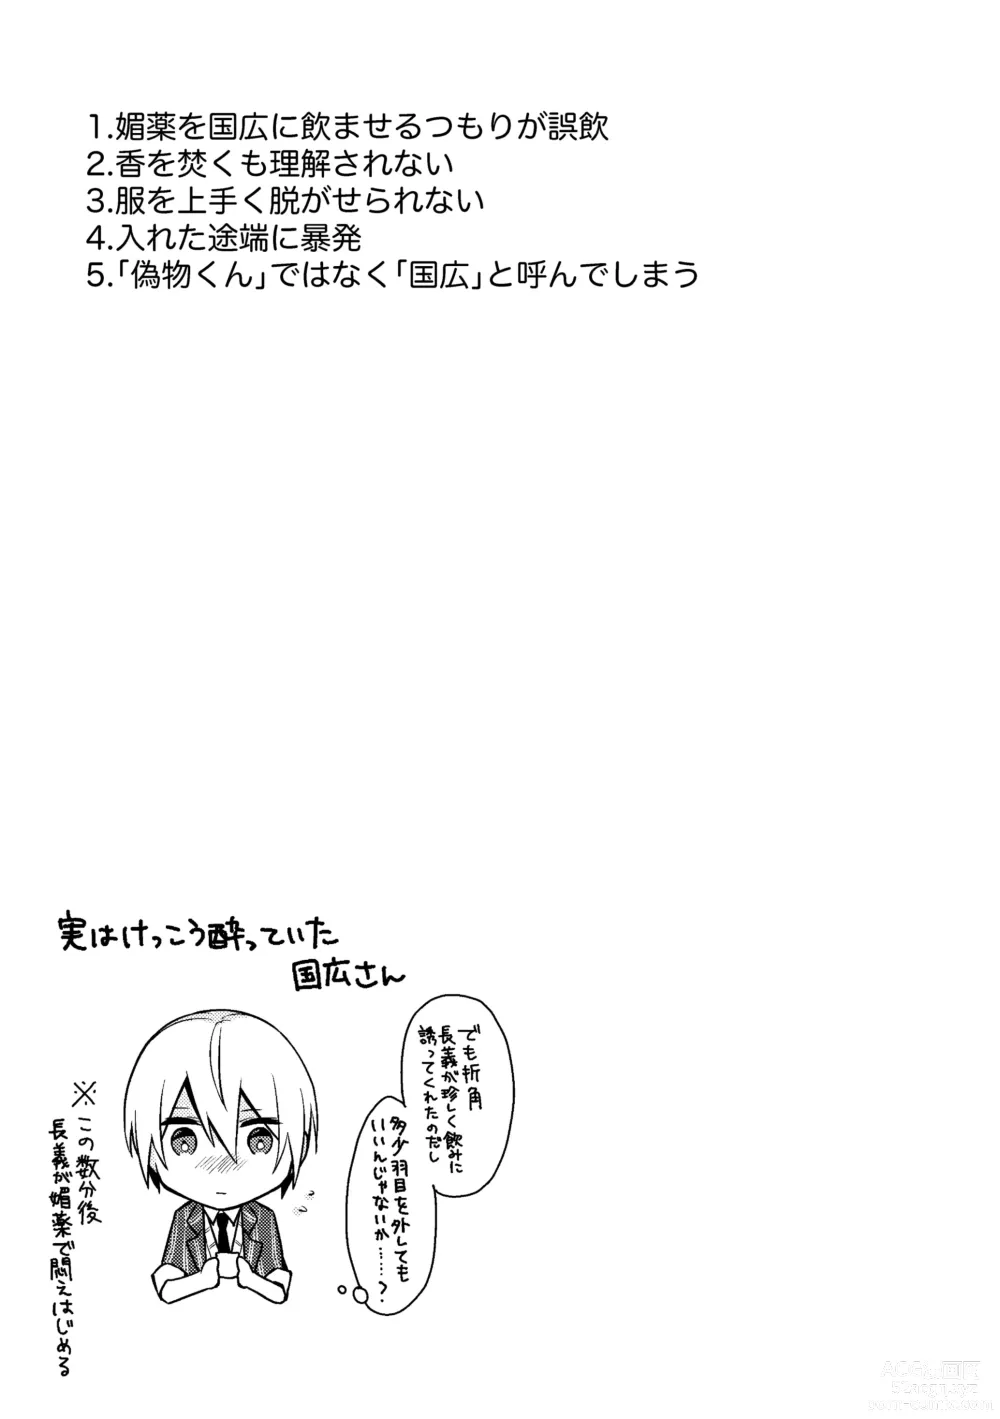 Page 17 of doujinshi Yama ● Setsu ● gi Sekkusu Shippai-shuu